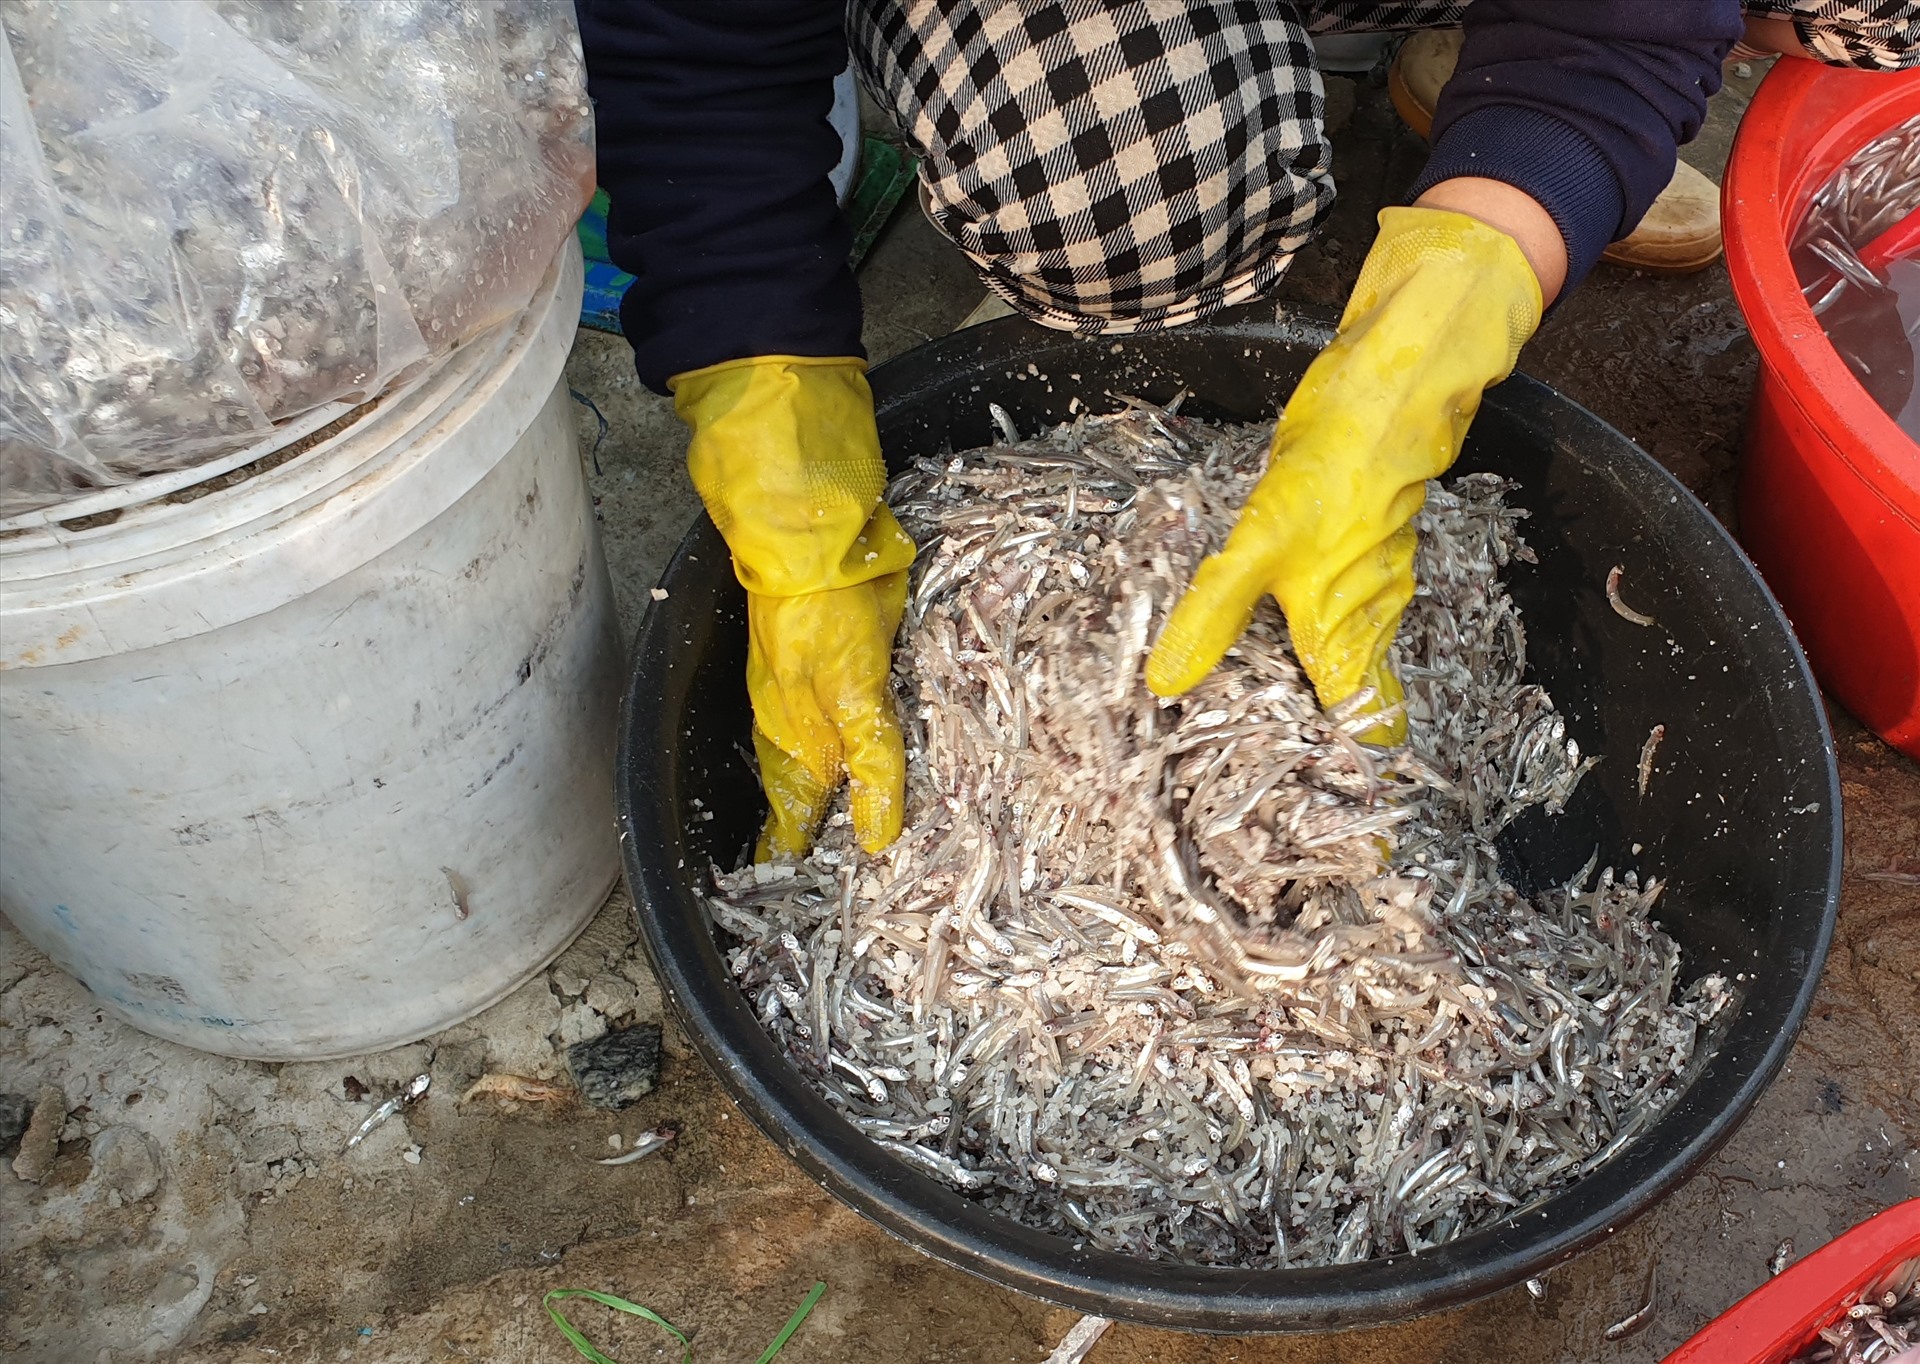 “Để muối cá không bị hư và đạt độ ngon thì nên trộn cá và muối theo tỉ lệ 3-1, tức 10kg cá - 3,5kg muối“- một người dân nói.